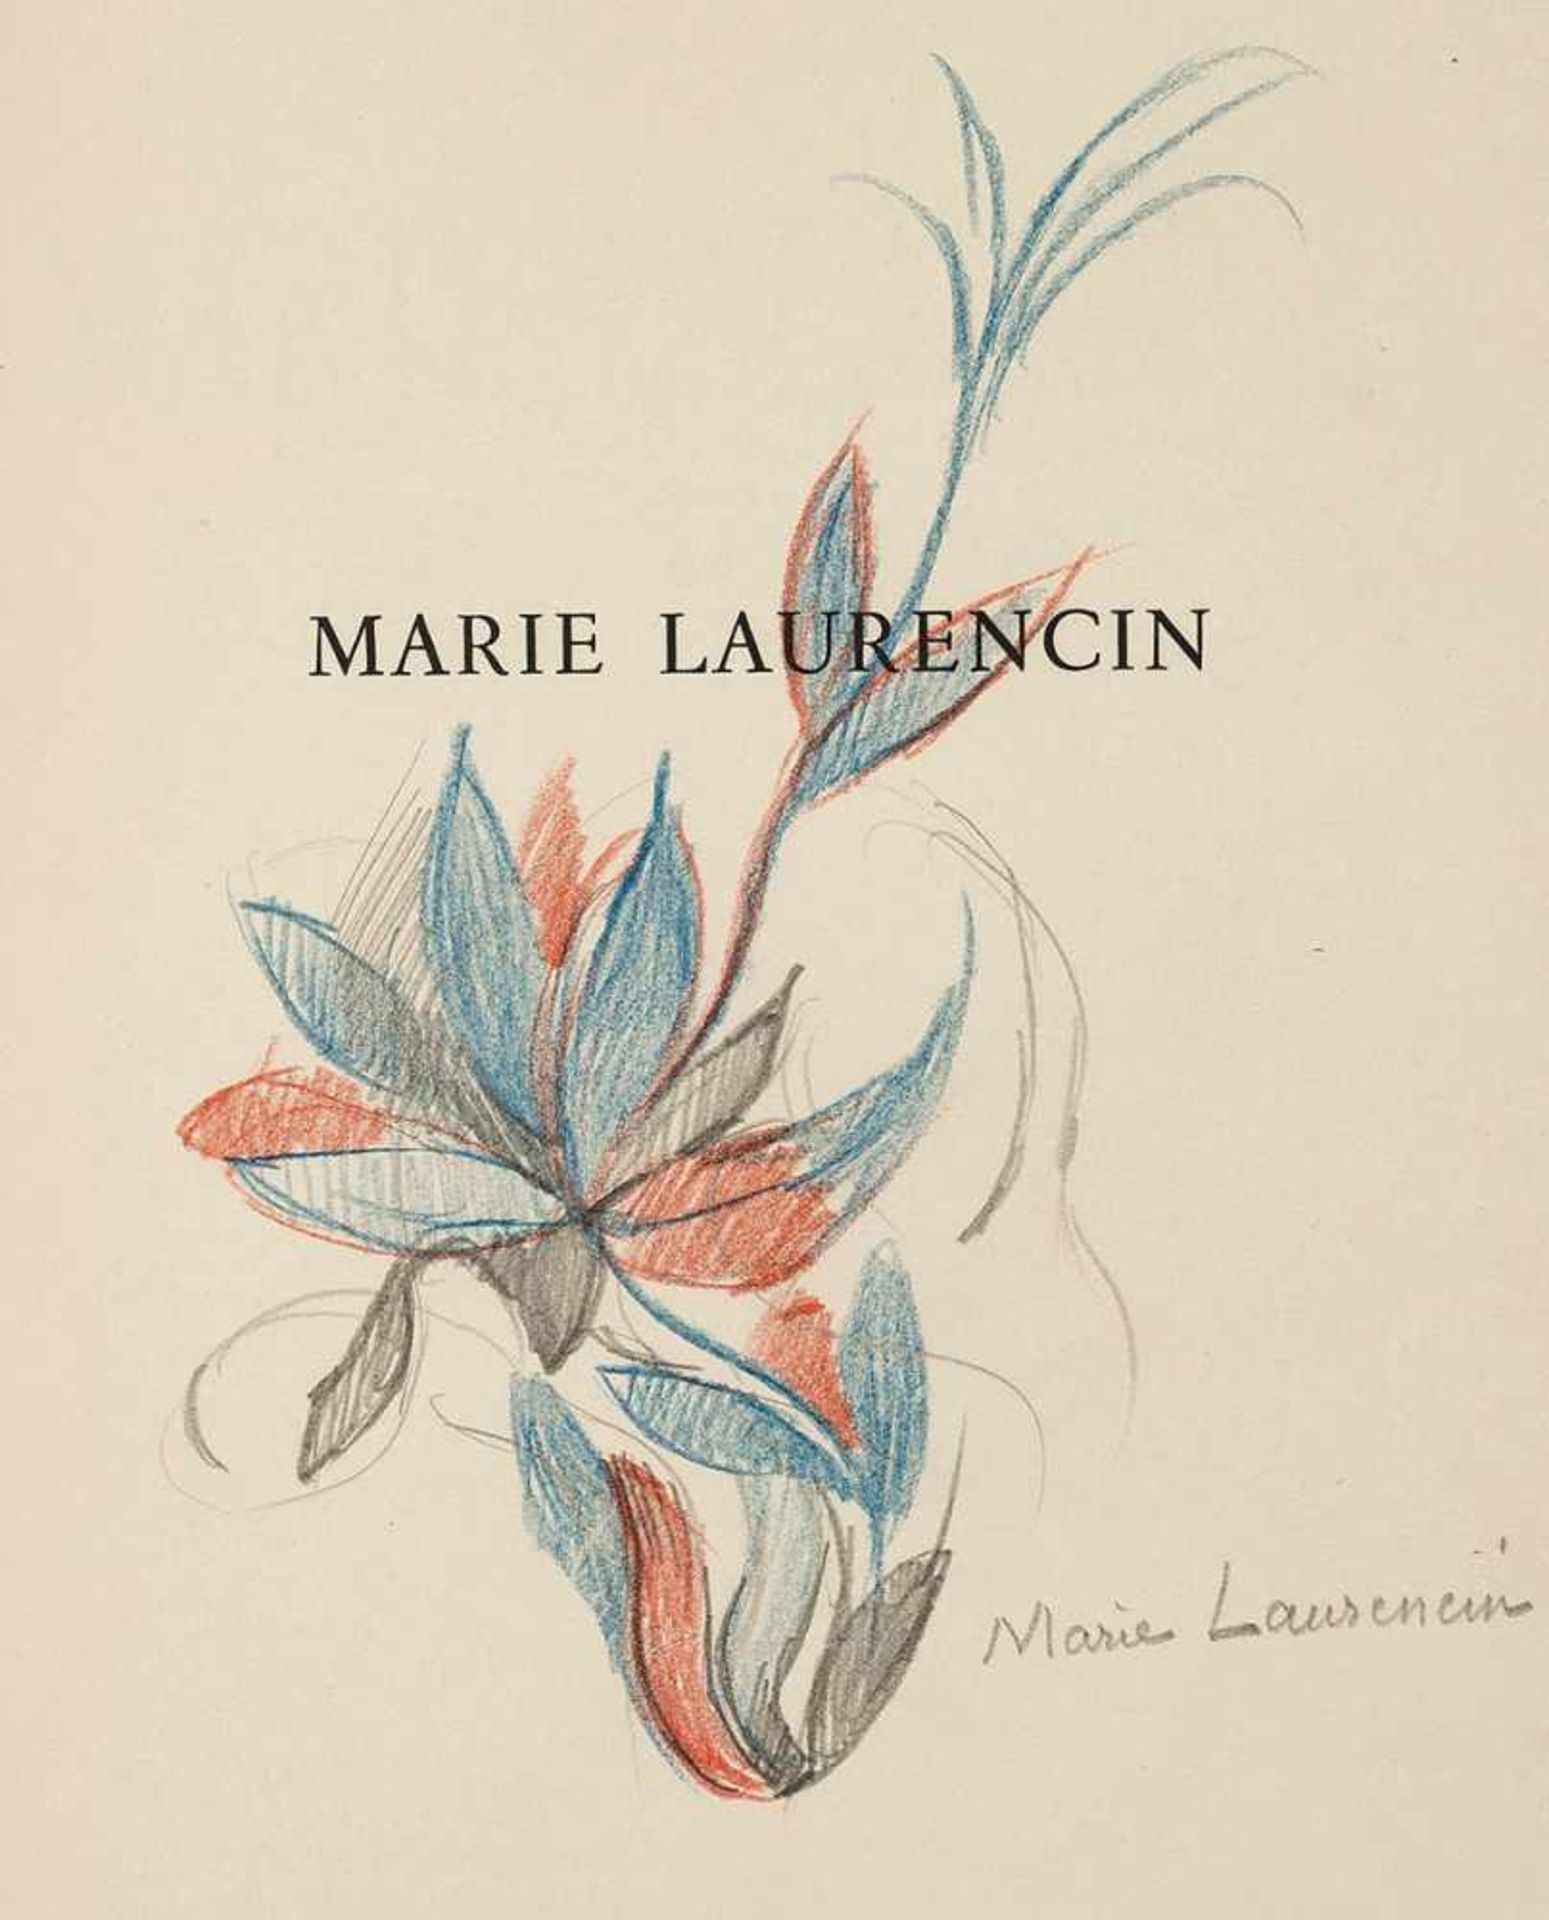 Laurencin. – George-Day. Marie Laurencin. (Mit Widmung und Zeichnung). Paris (1947). 53 S., 2 Bll.